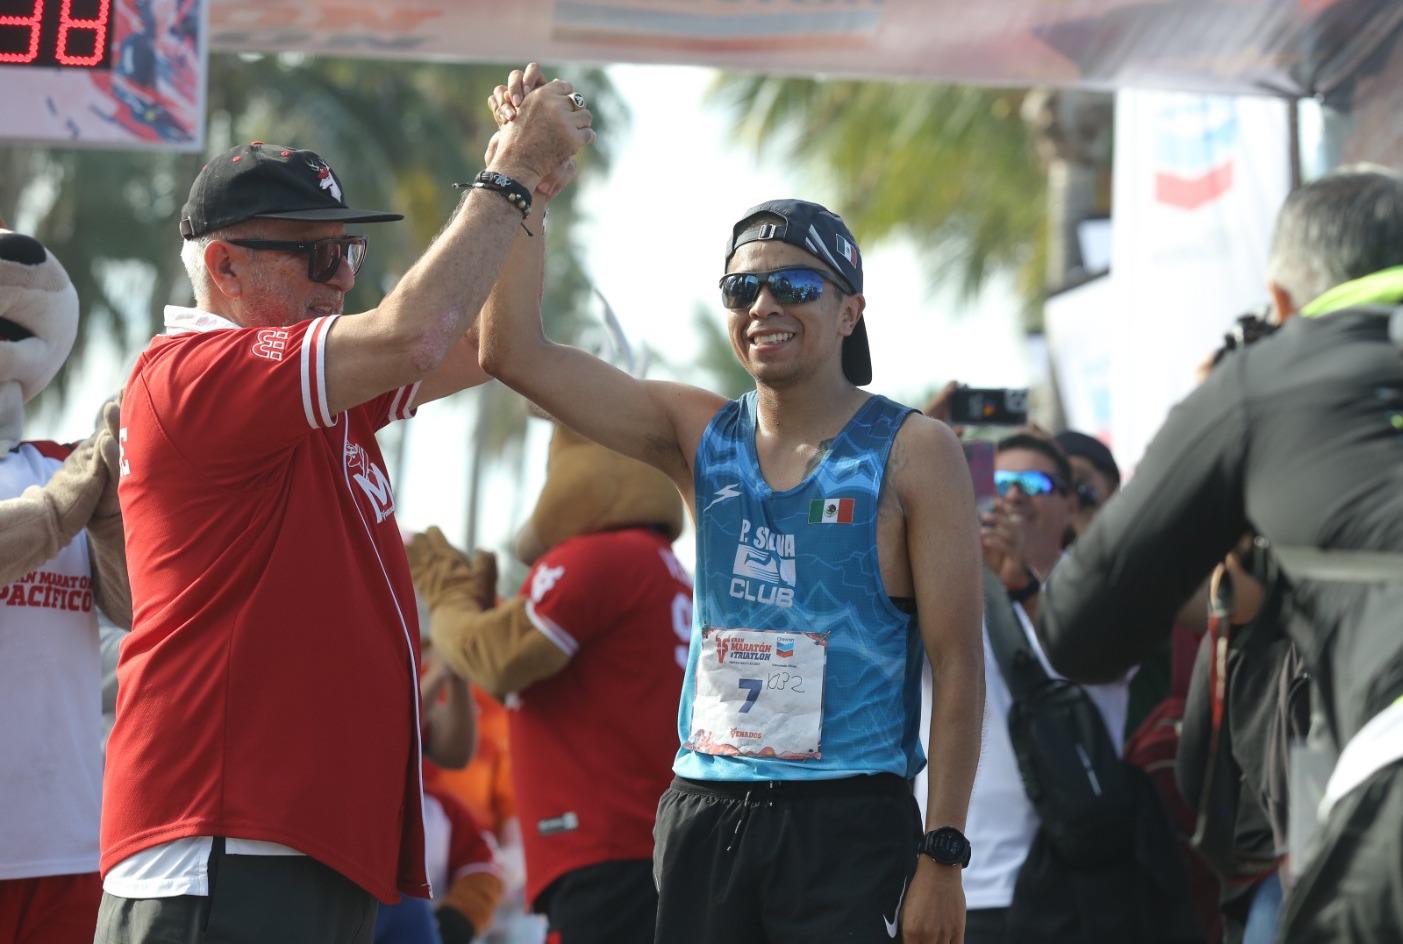 $!Sinaloa y Guanajuato se consagran campeones del Maratón Pacífico